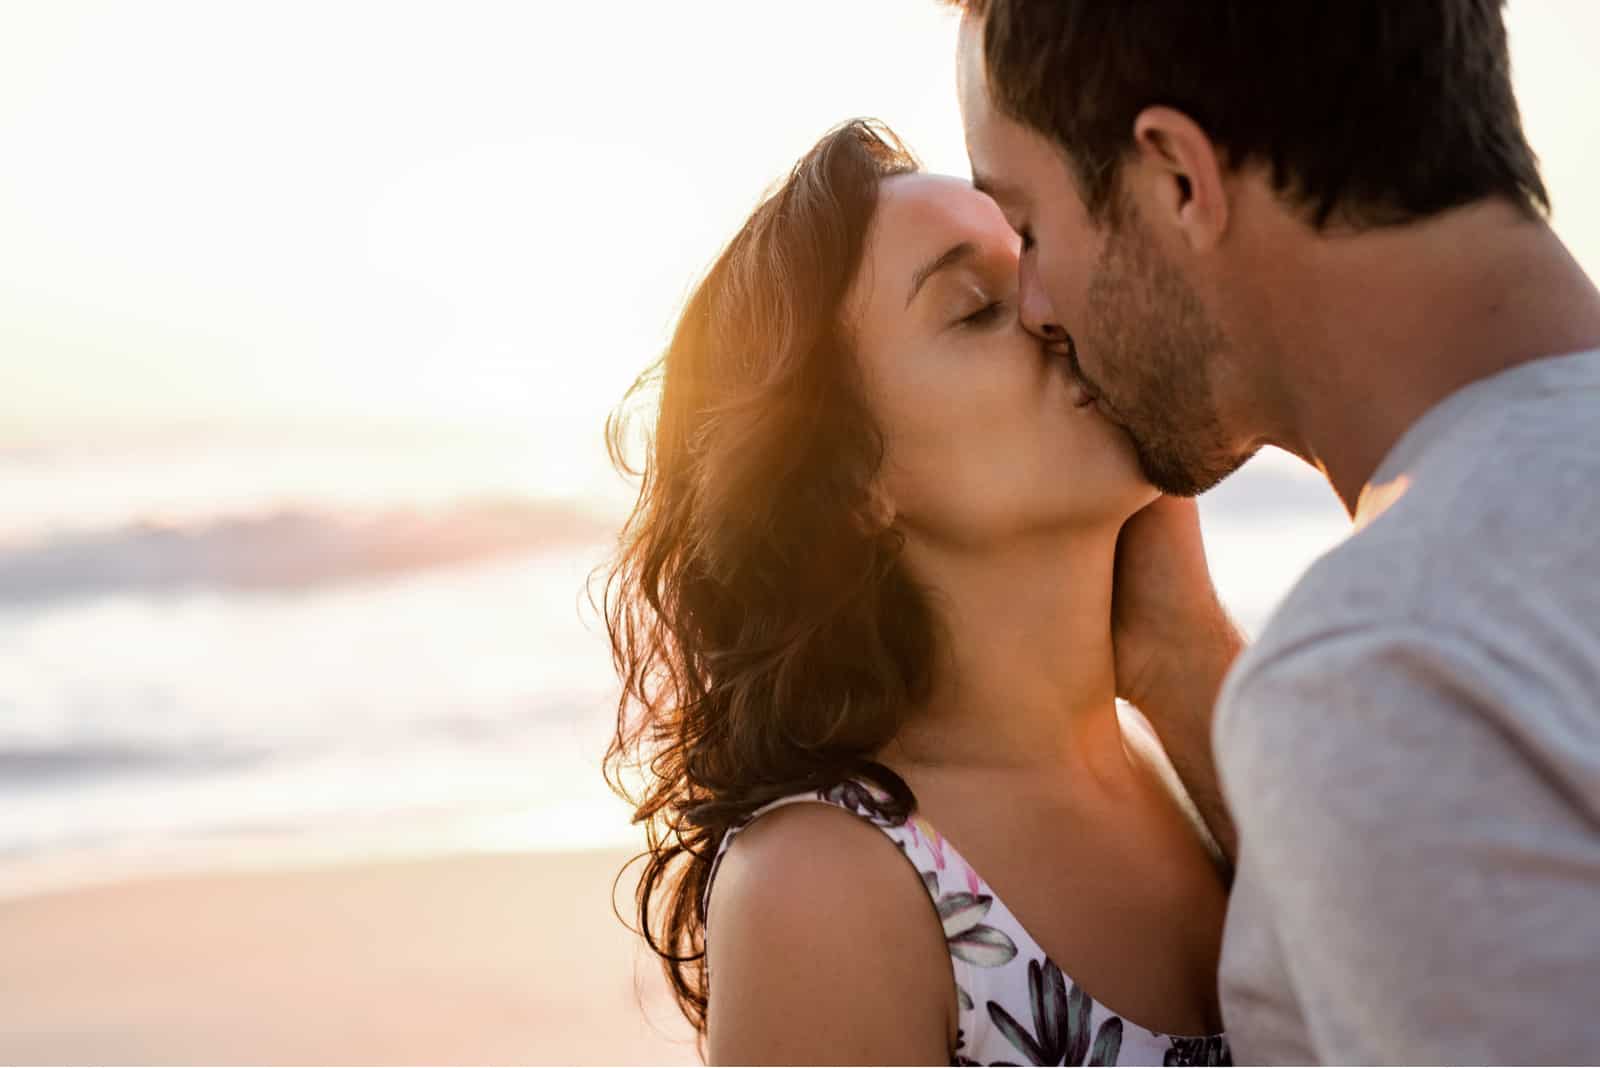 couple kissing on a sandy beach